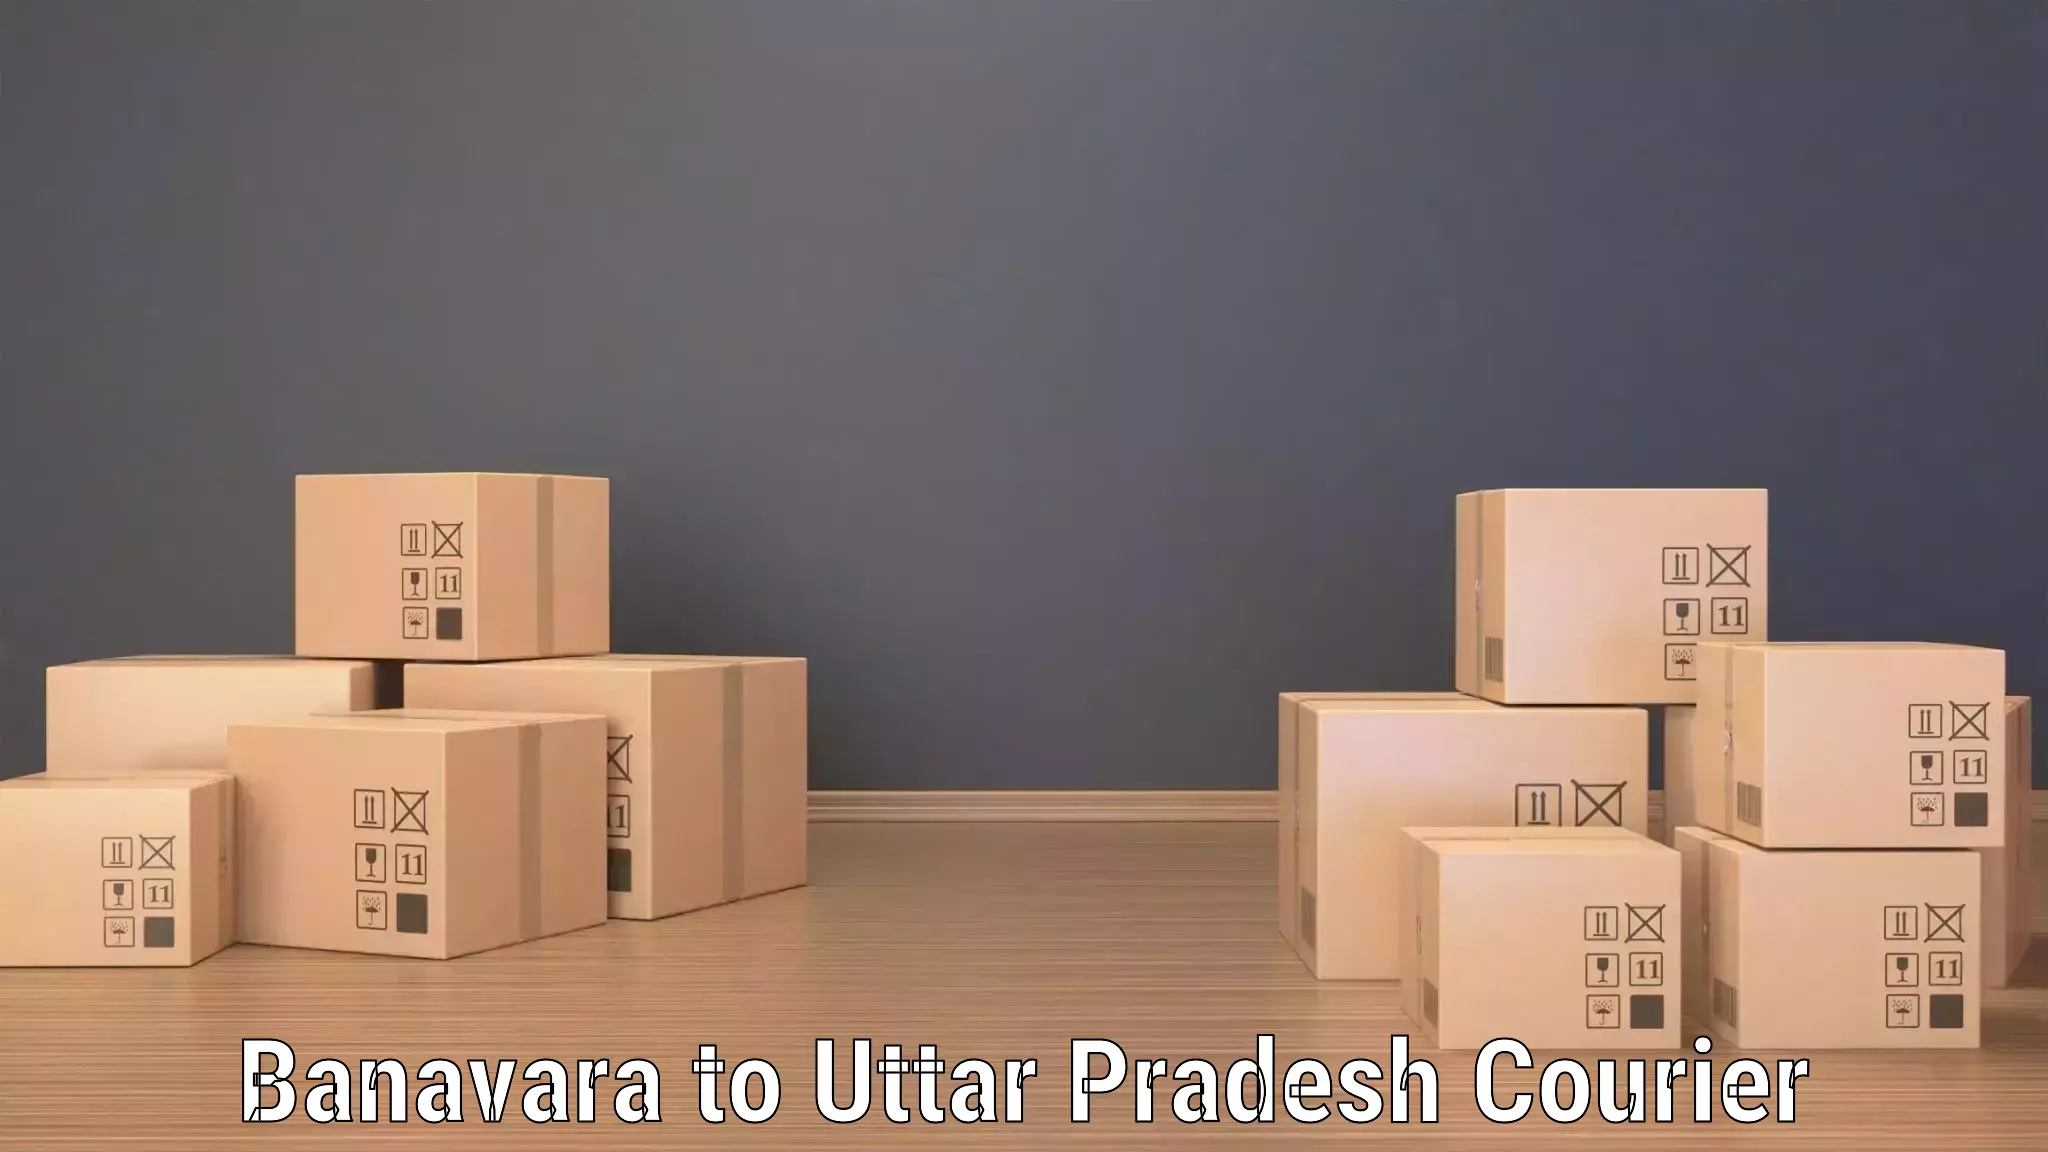 24/7 courier service Banavara to Sant Ravidas Nagar